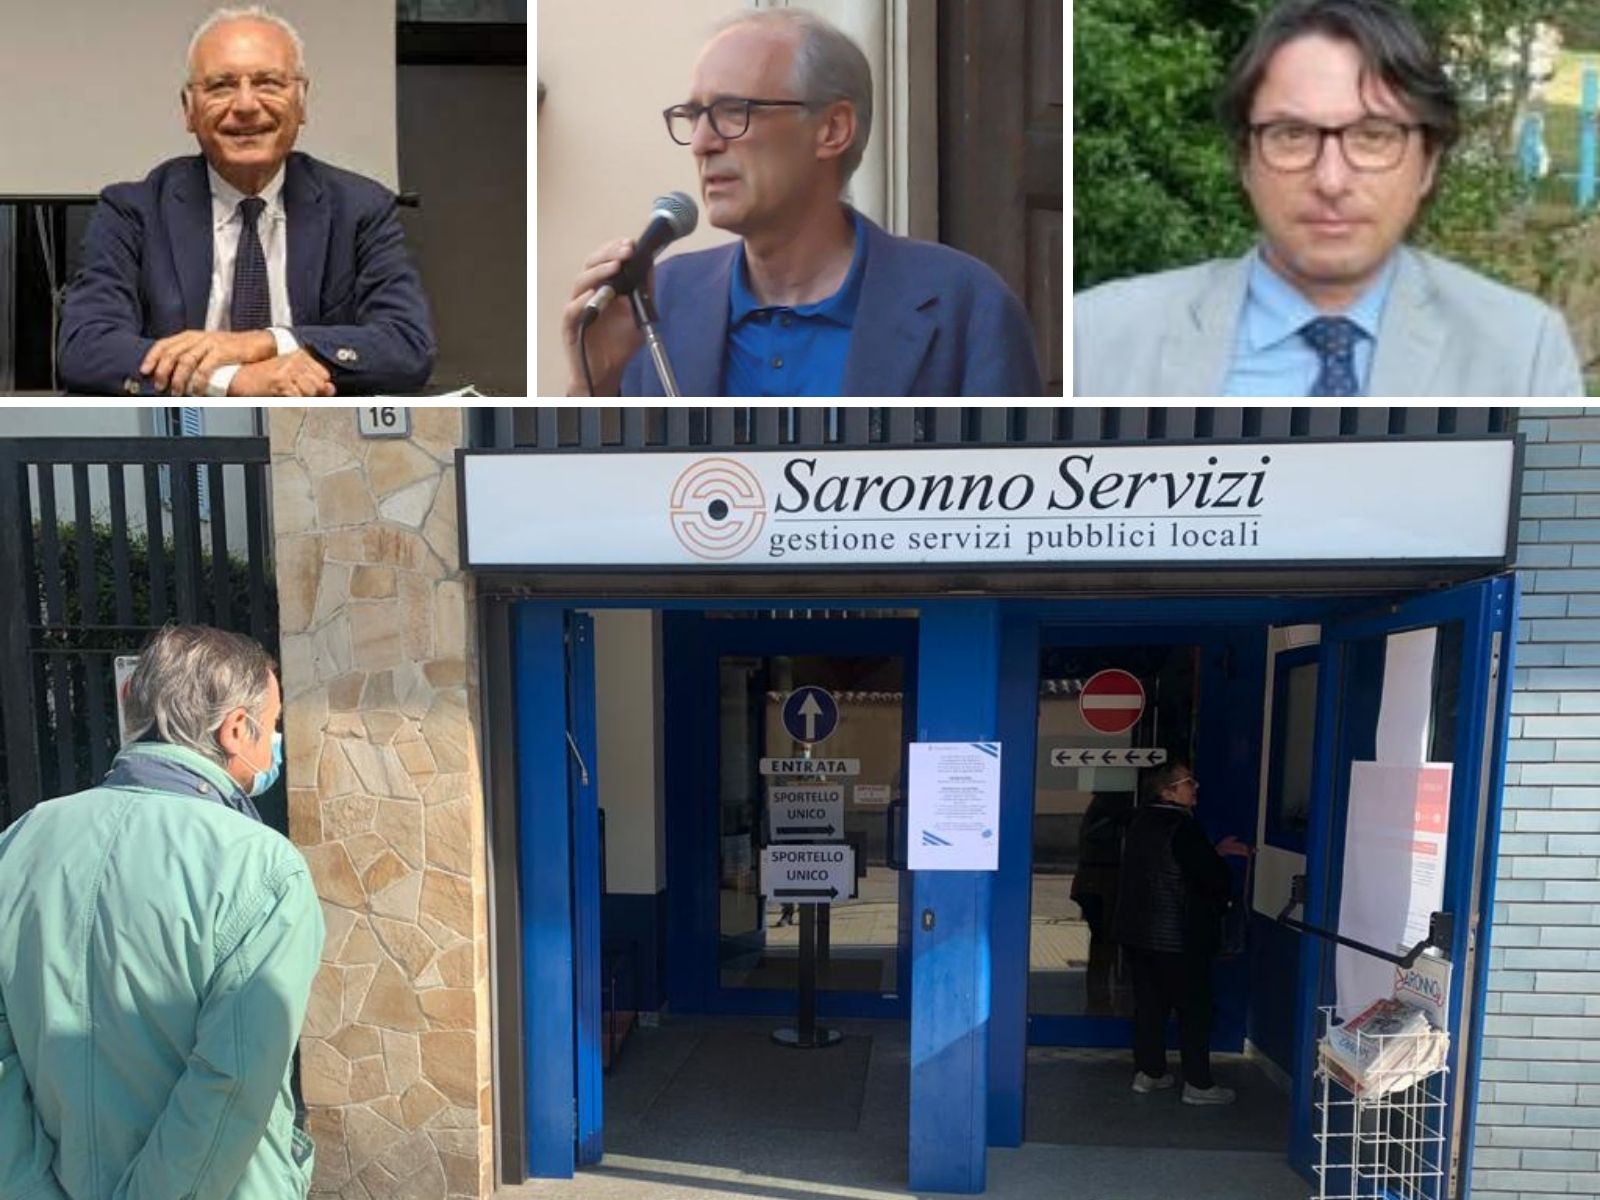 Saronno Servizi, Airoldi: “E’ una scommessa vinta dall’Amministrazione al di là del politichese. Sono soddisfatto”